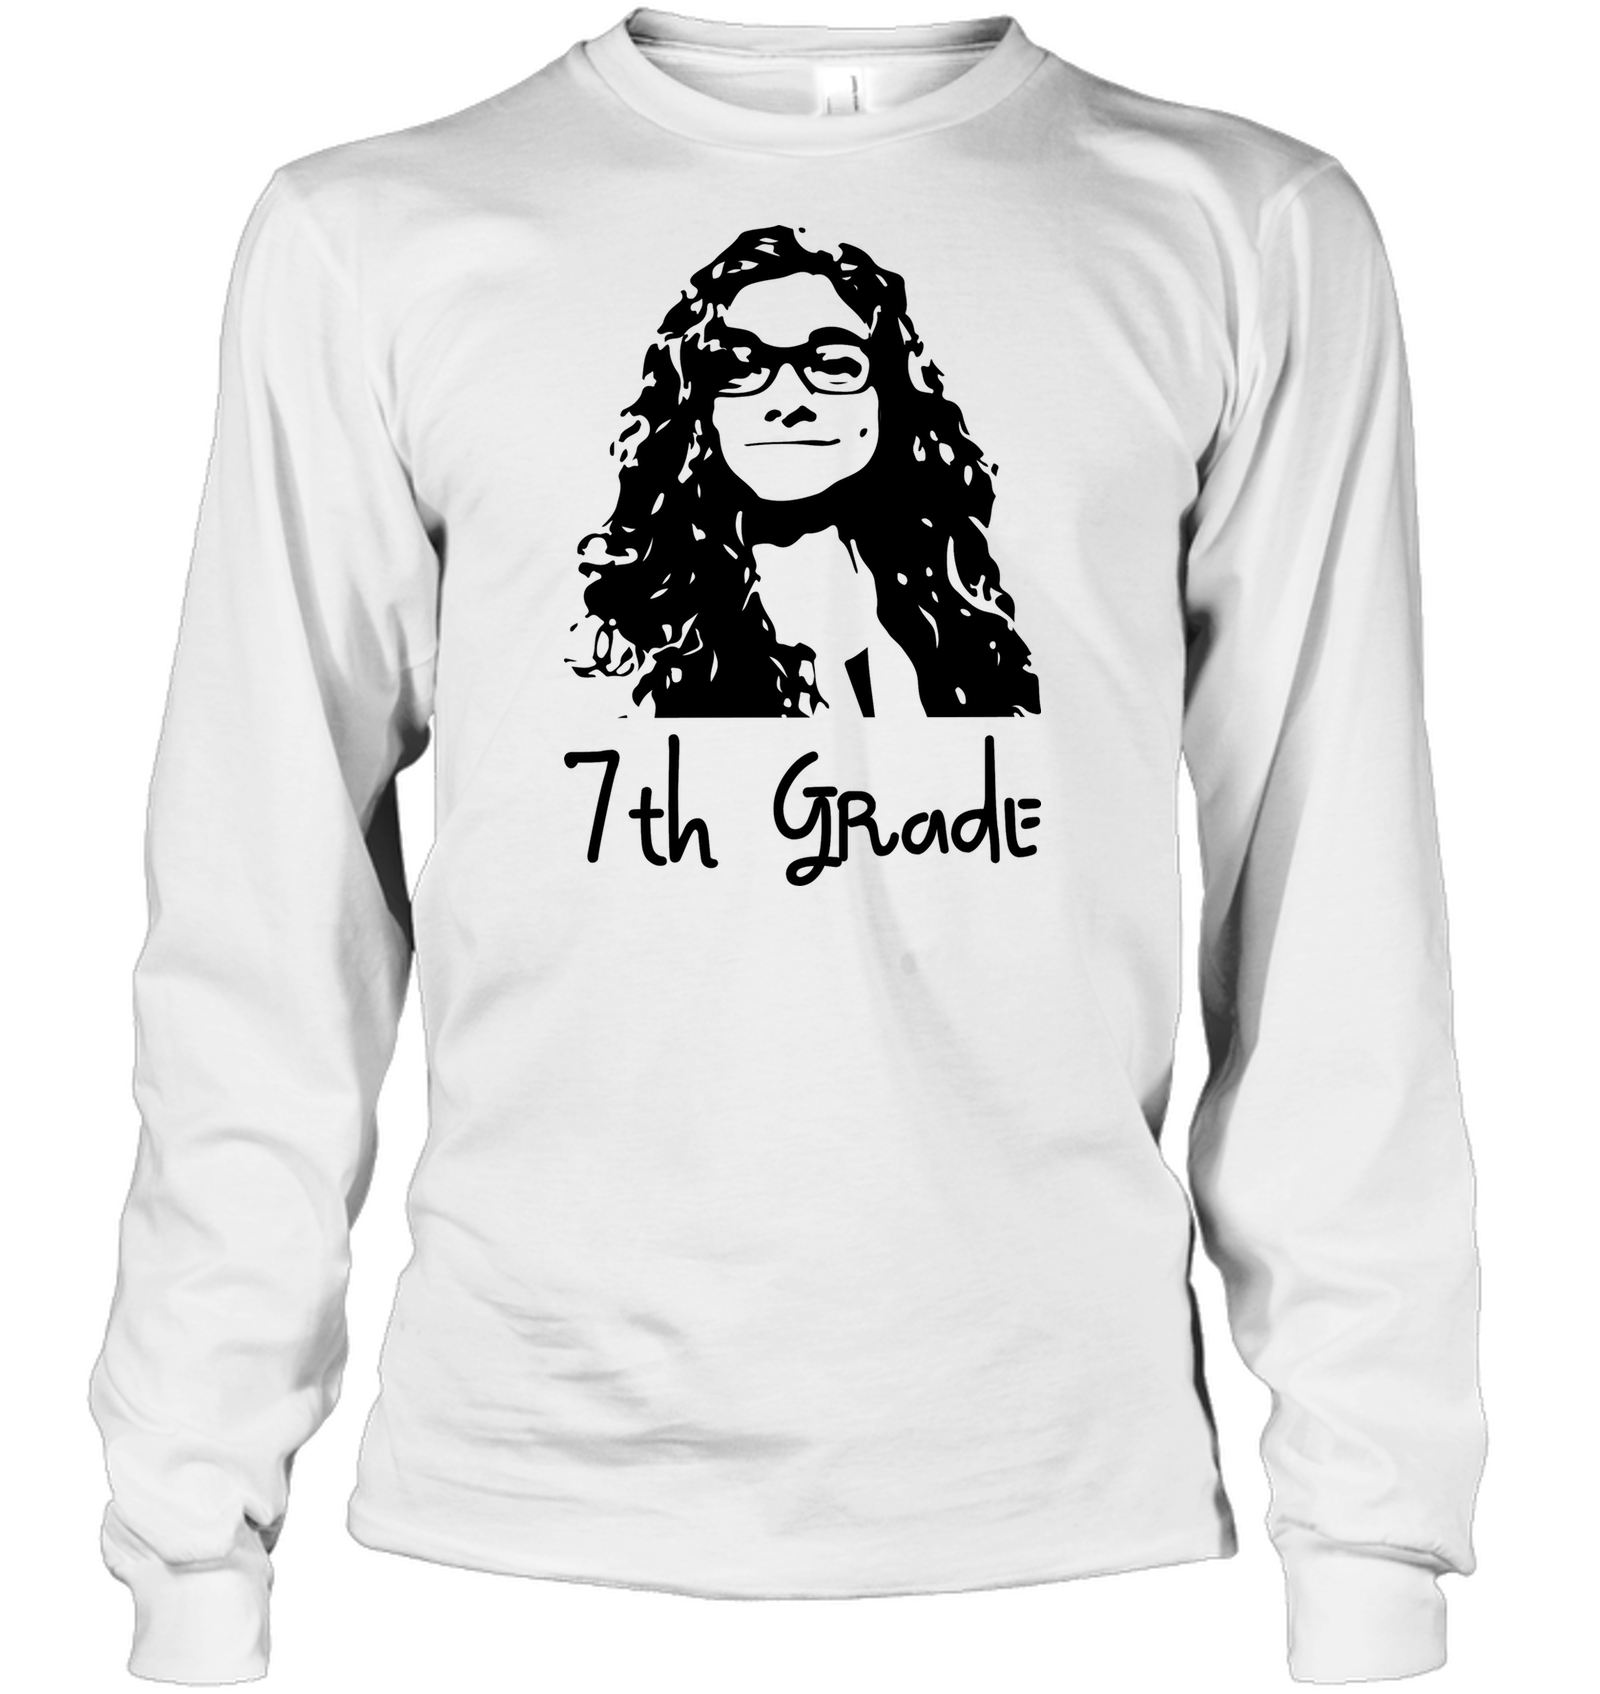 7th Grade - Gildan Adult Classic Long Sleeve T-Shirt